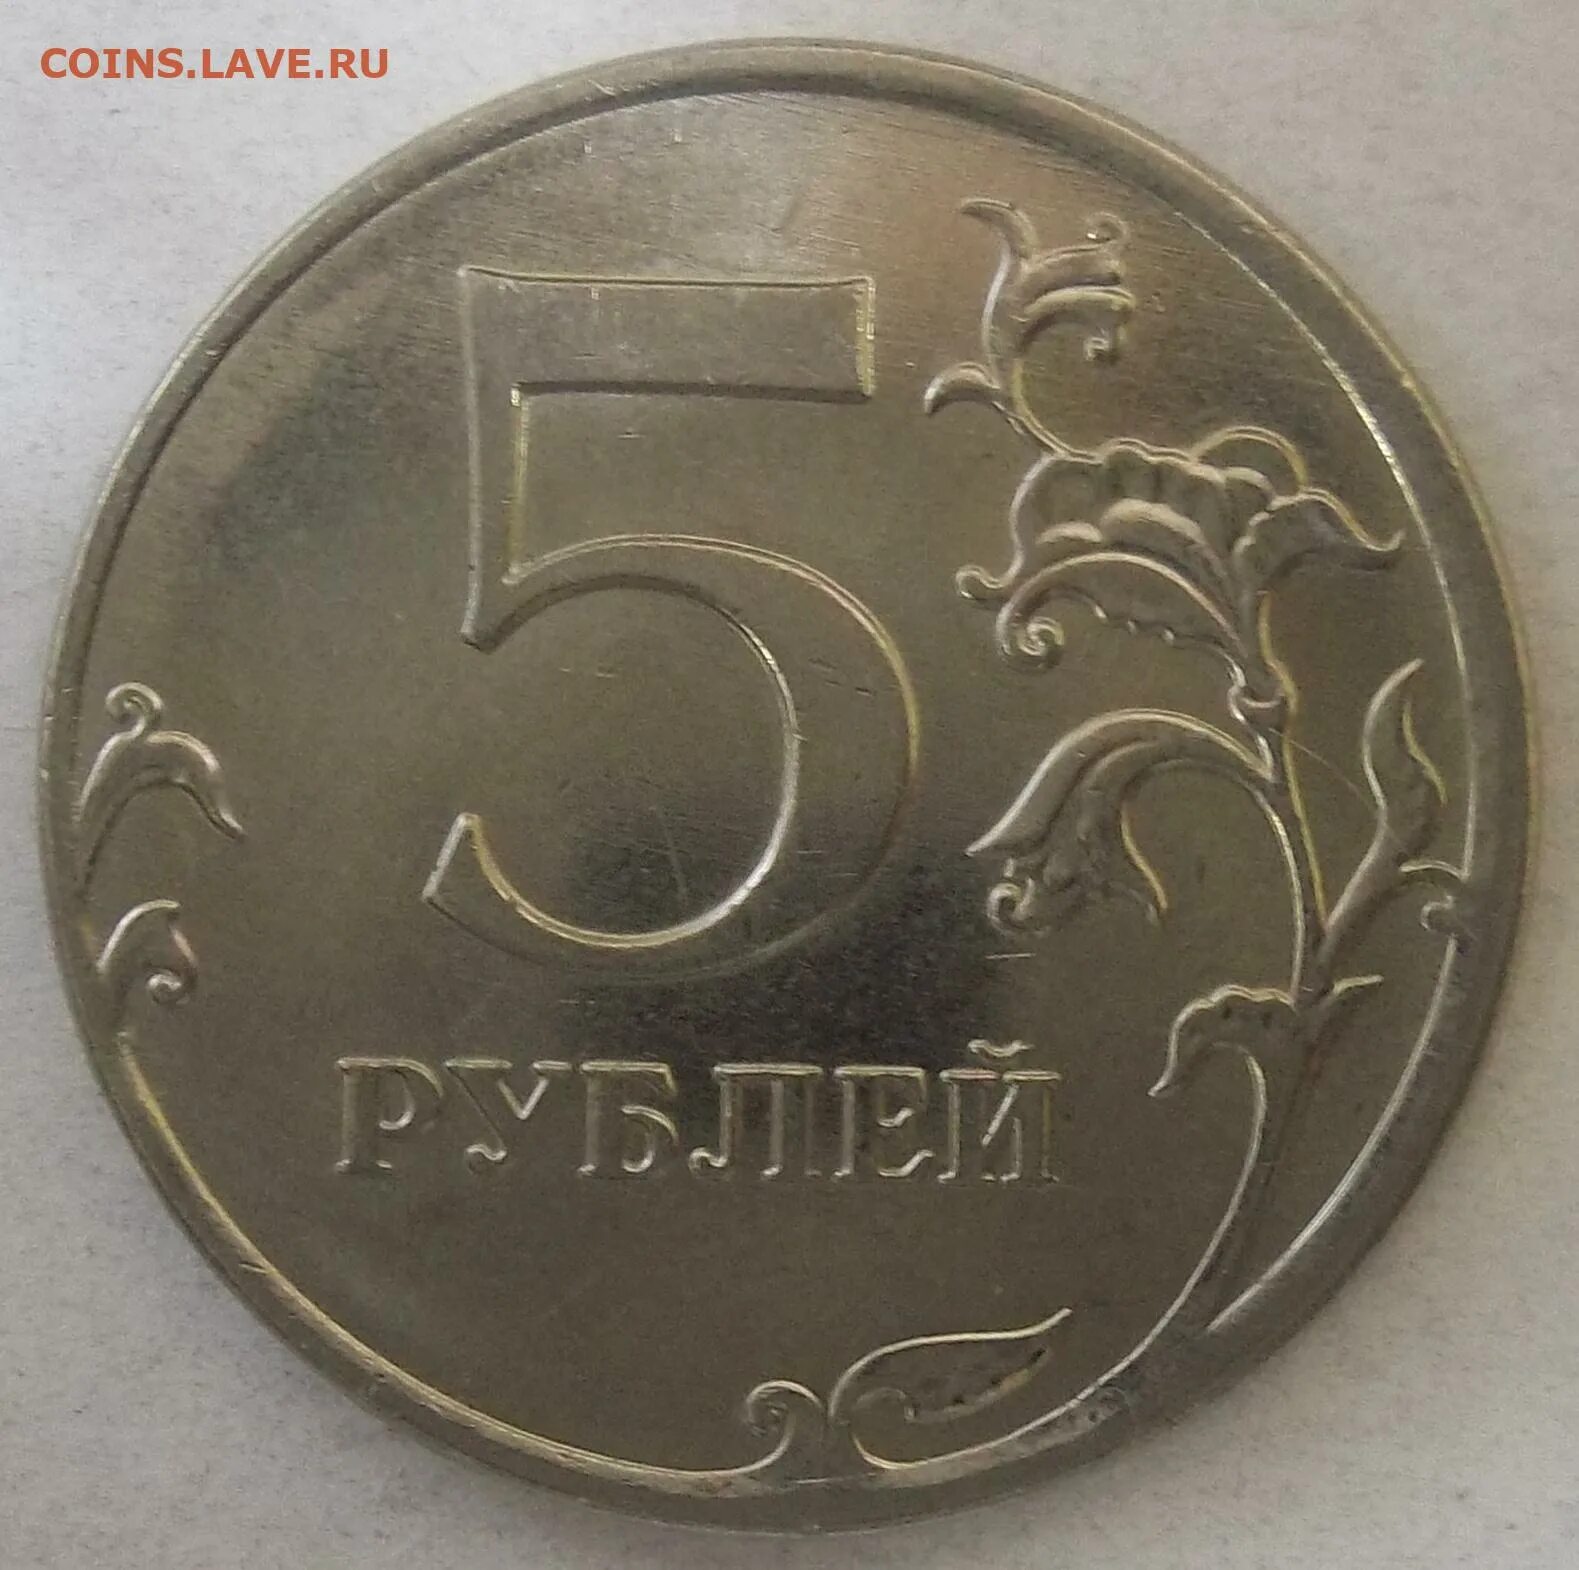 5 рублей 1812. 5 Руб 2012 ММД. 5 Рублей 2012 Лейпцигское сражение.